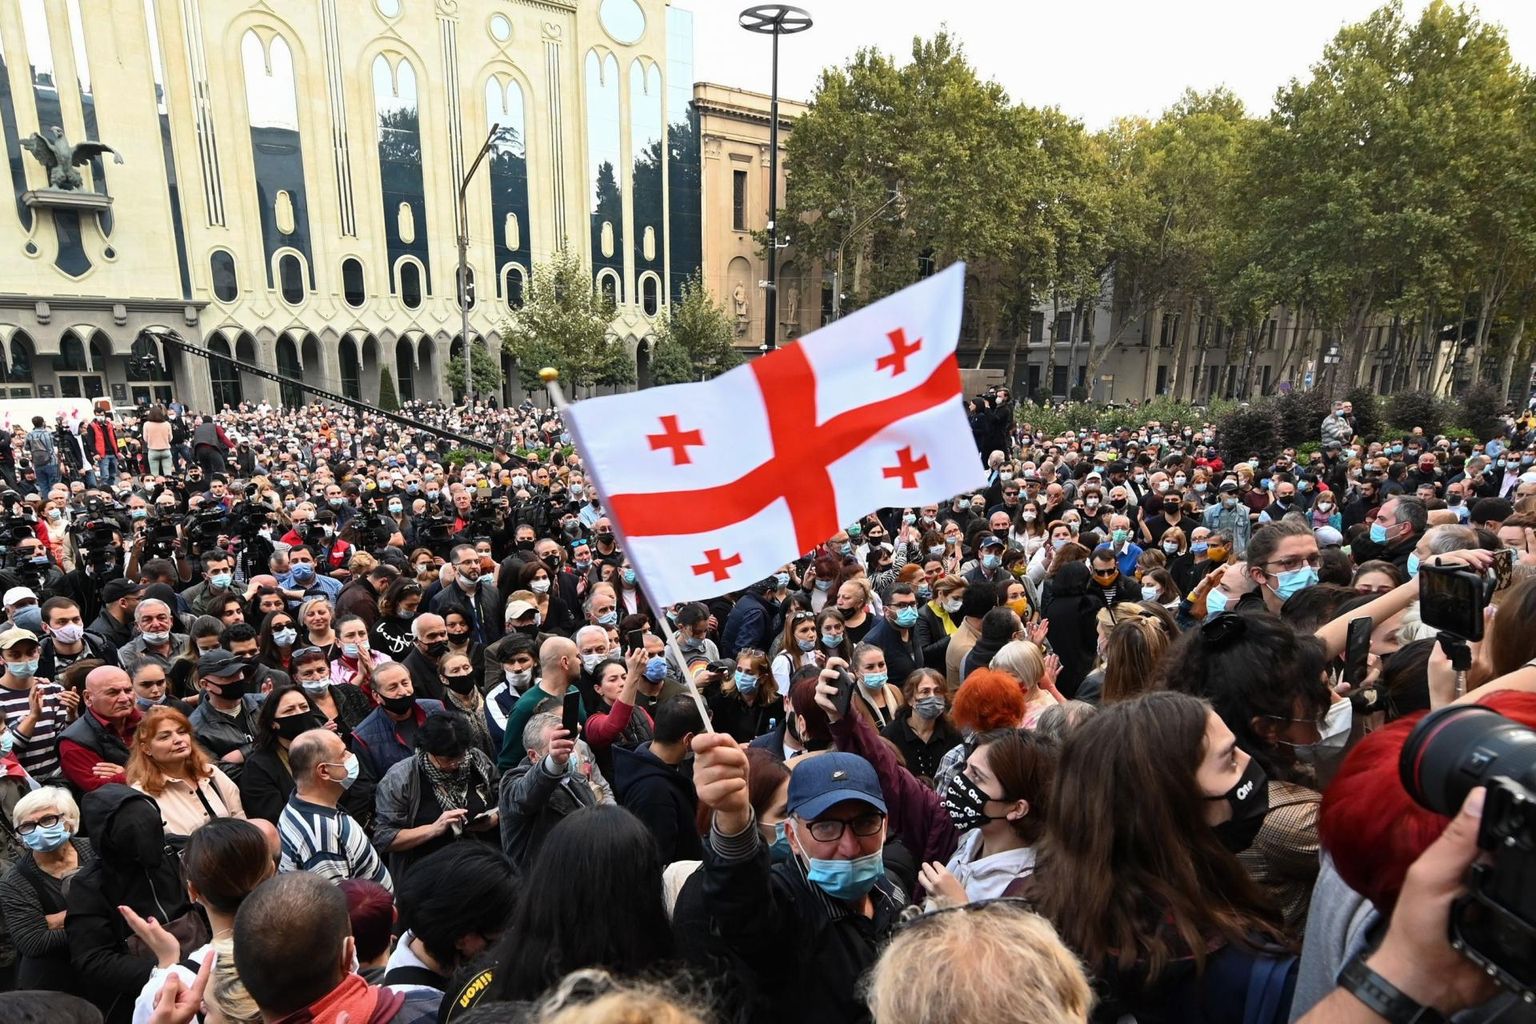 Gruusia opositsiooni toetajad tulid valimistulemuste vastu tänavatele meelt avaldama.